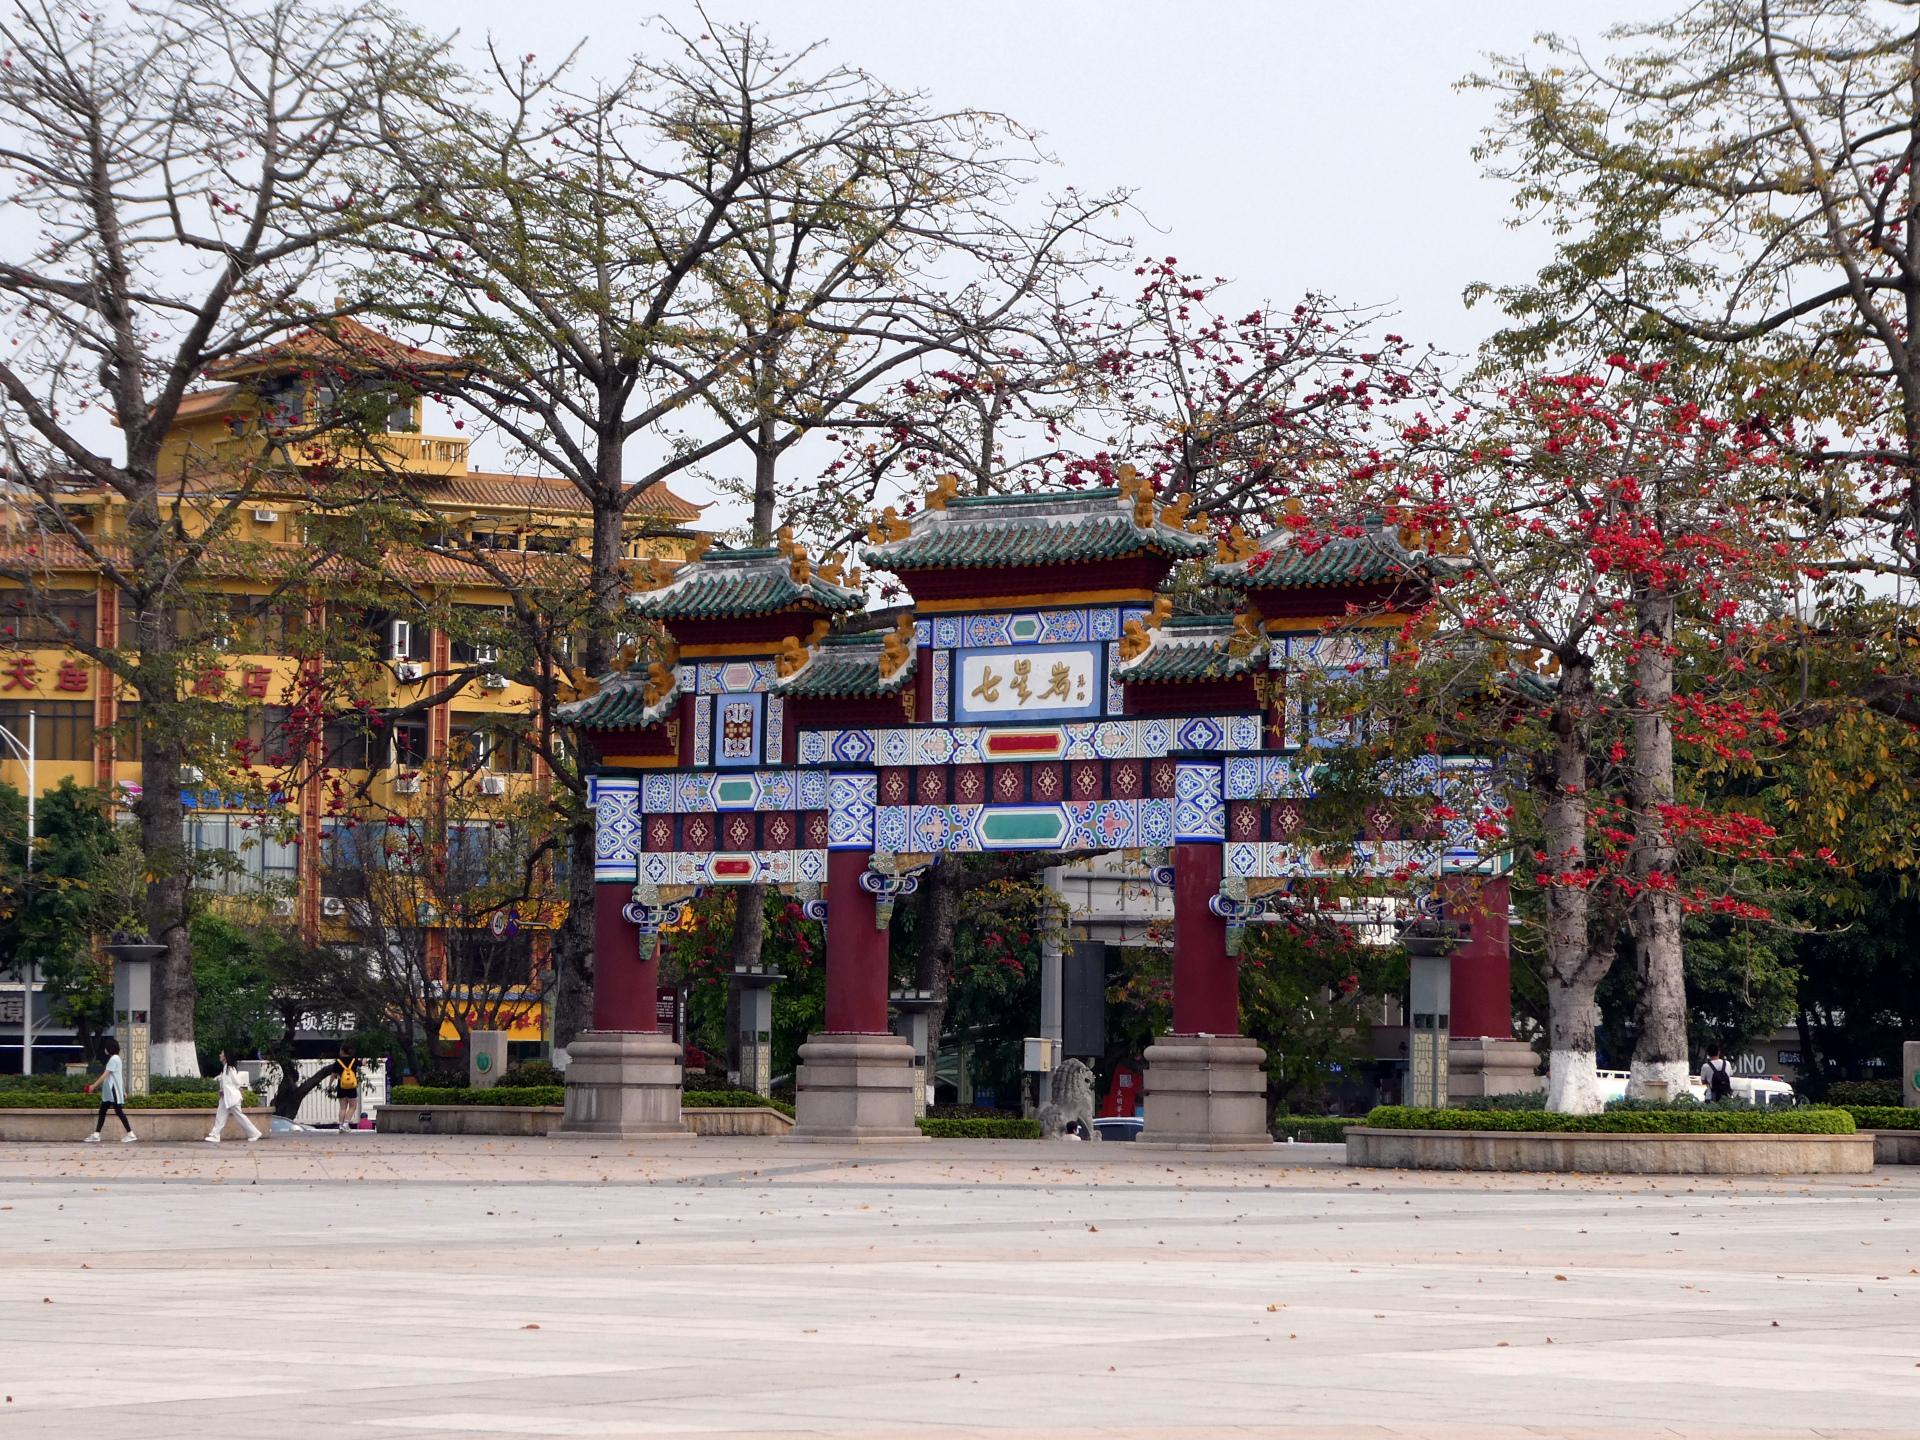 A decorative gate in Zhaoqing